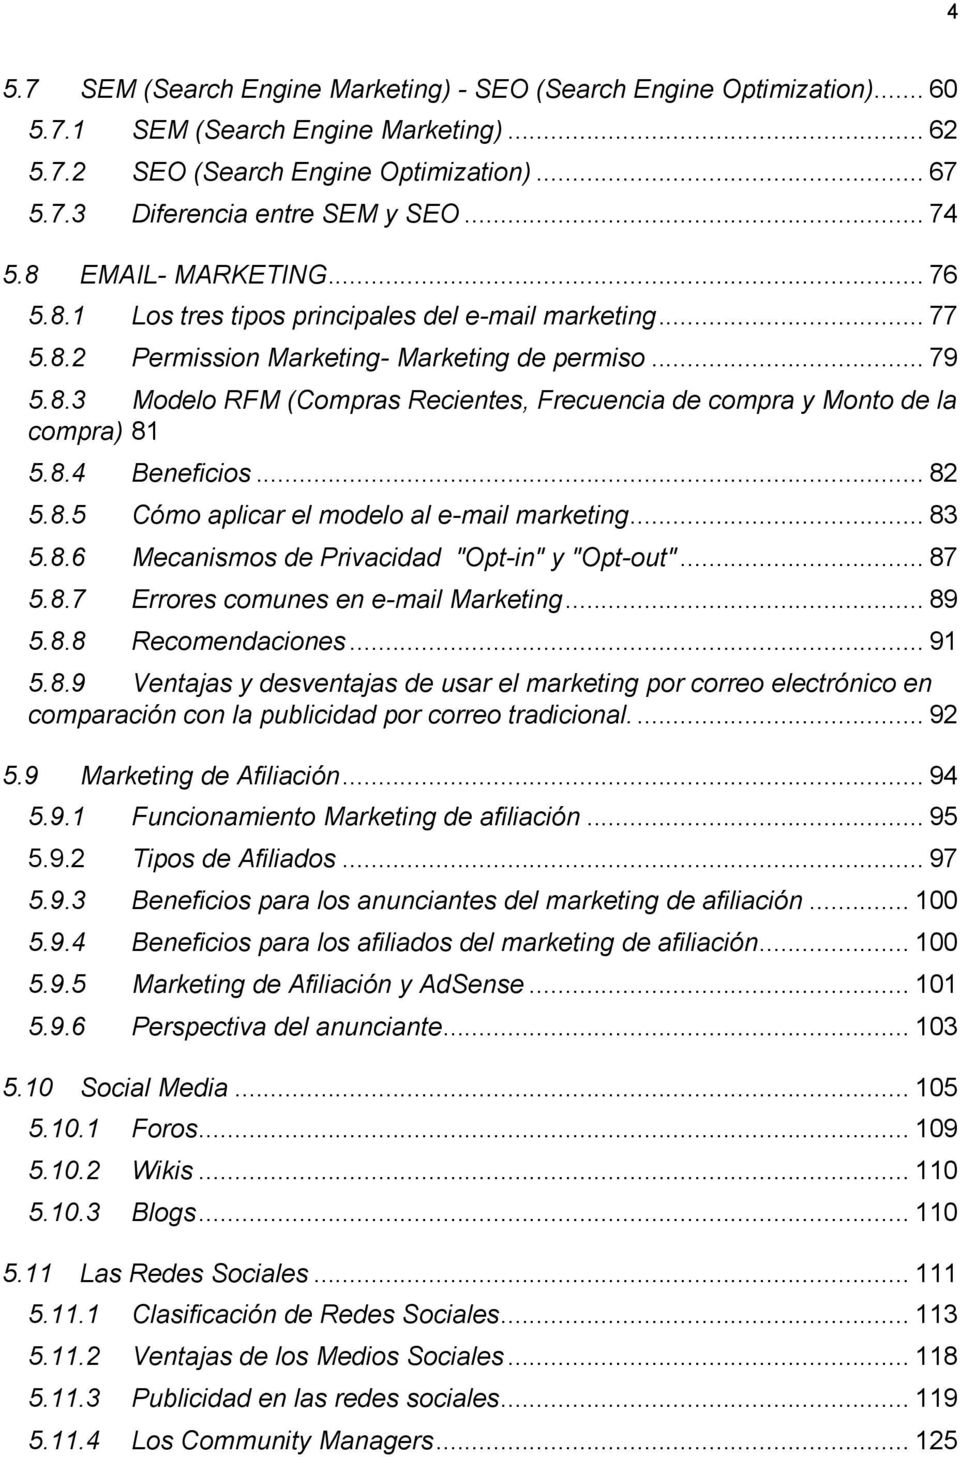 8.4 Beneficios... 82 5.8.5 Cómo aplicar el modelo al e-mail marketing... 83 5.8.6 Mecanismos de Privacidad "Opt-in" y "Opt-out"... 87 5.8.7 Errores comunes en e-mail Marketing... 89 5.8.8 Recomendaciones.